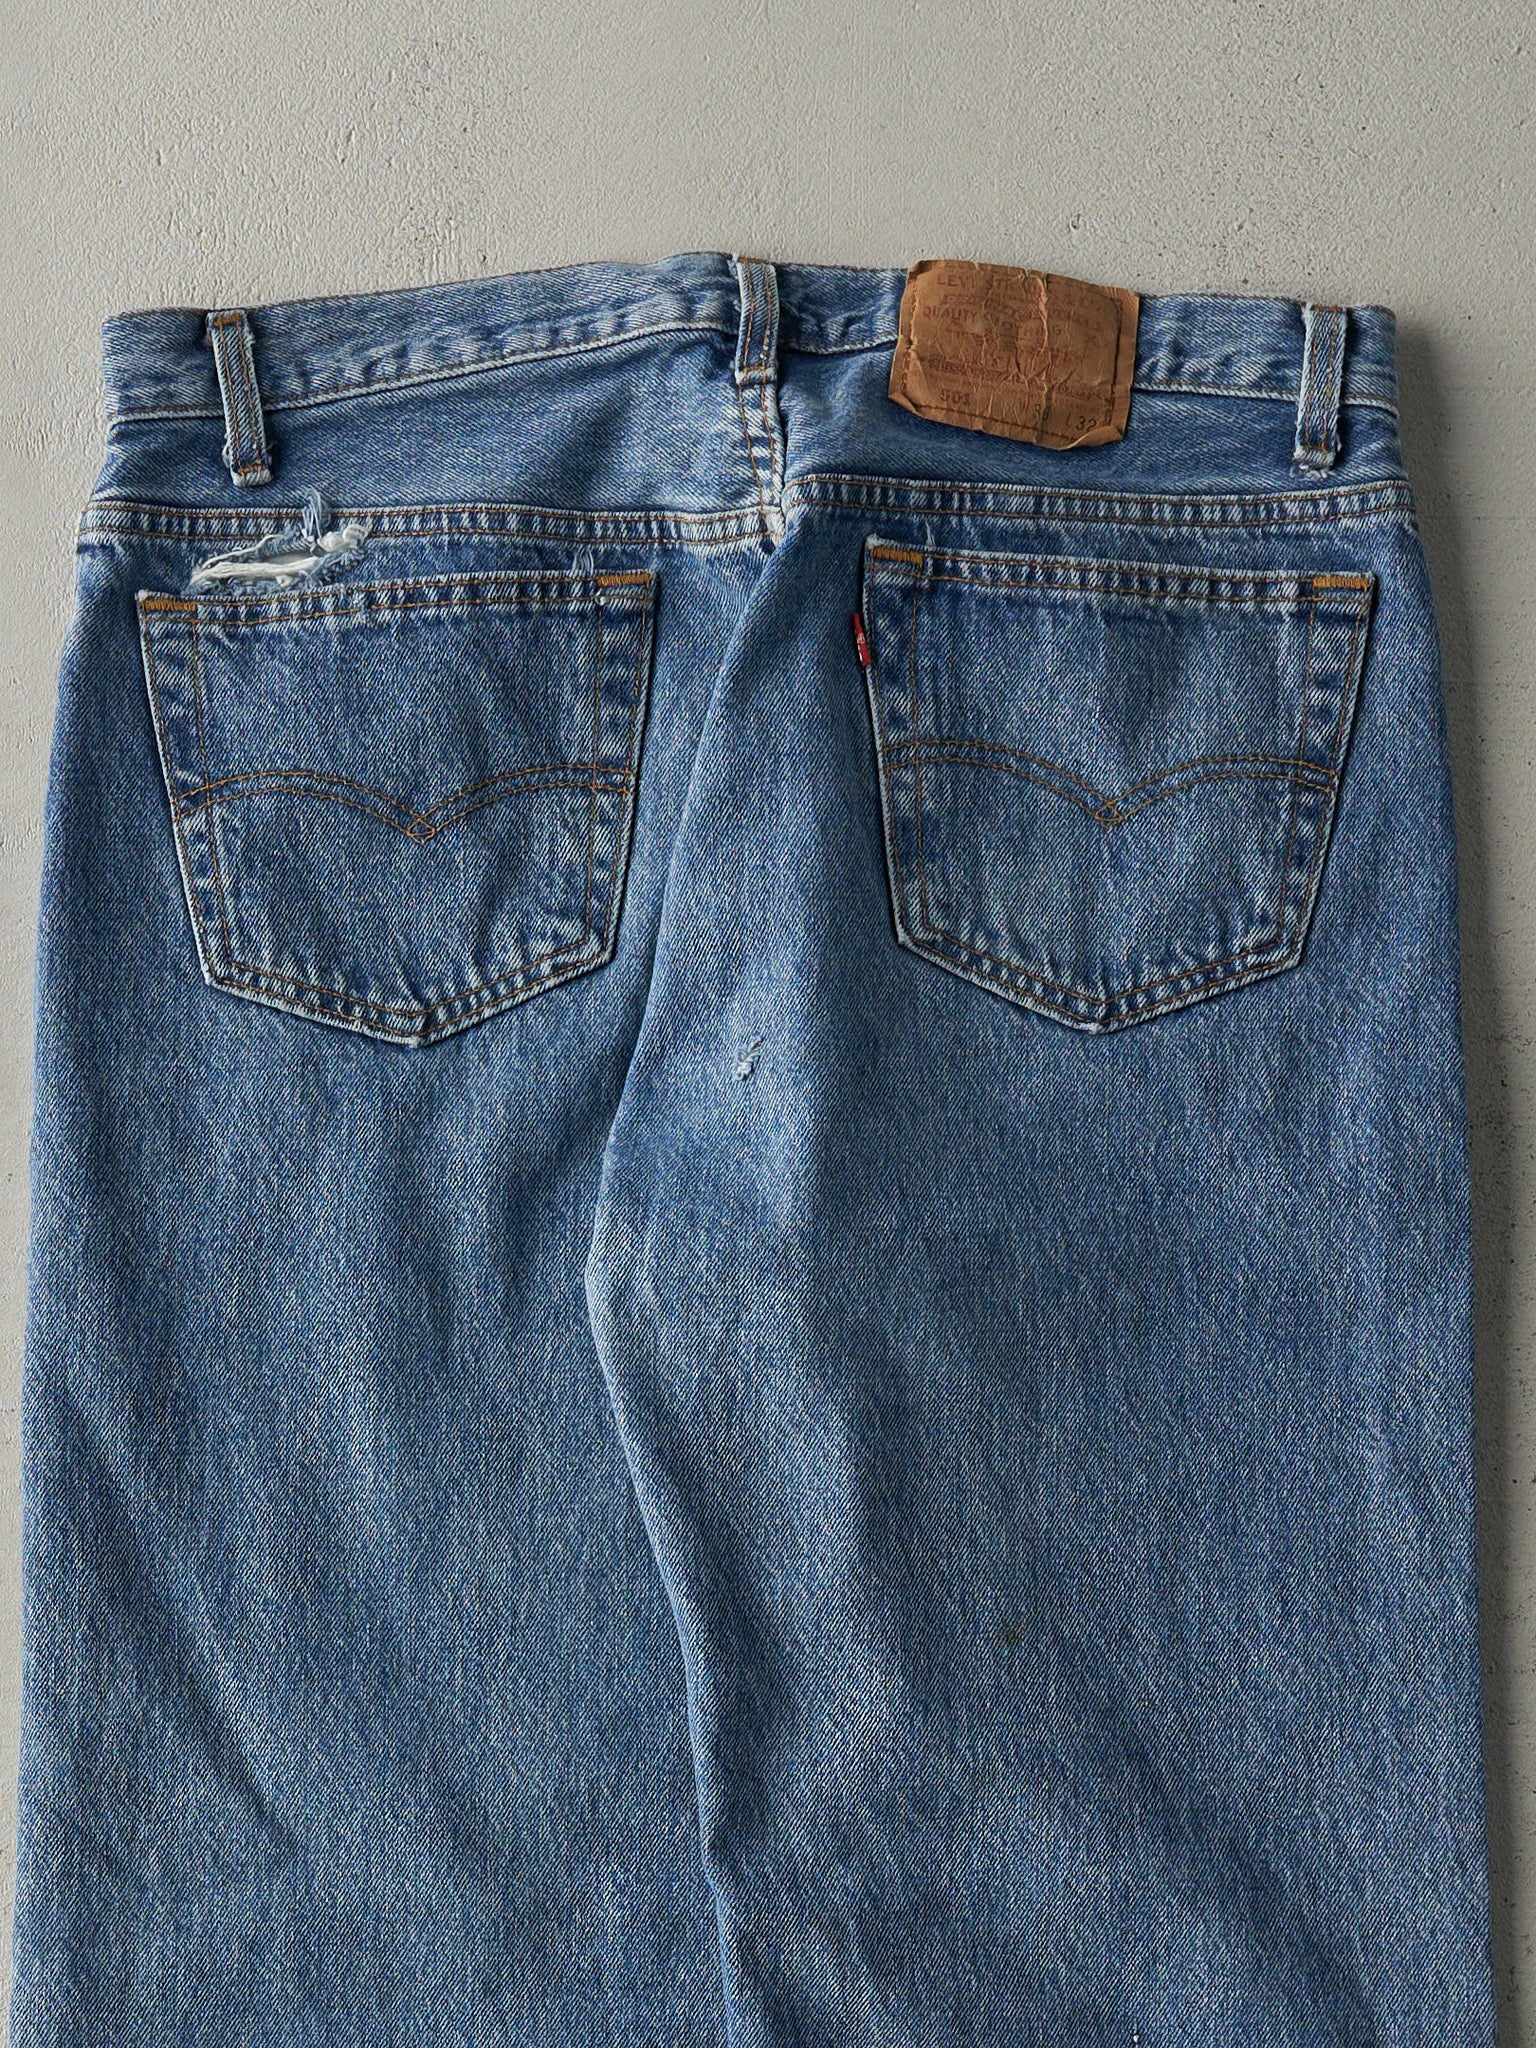 Vintage 80s Light Wash Levi's 501 Jeans (34x28)